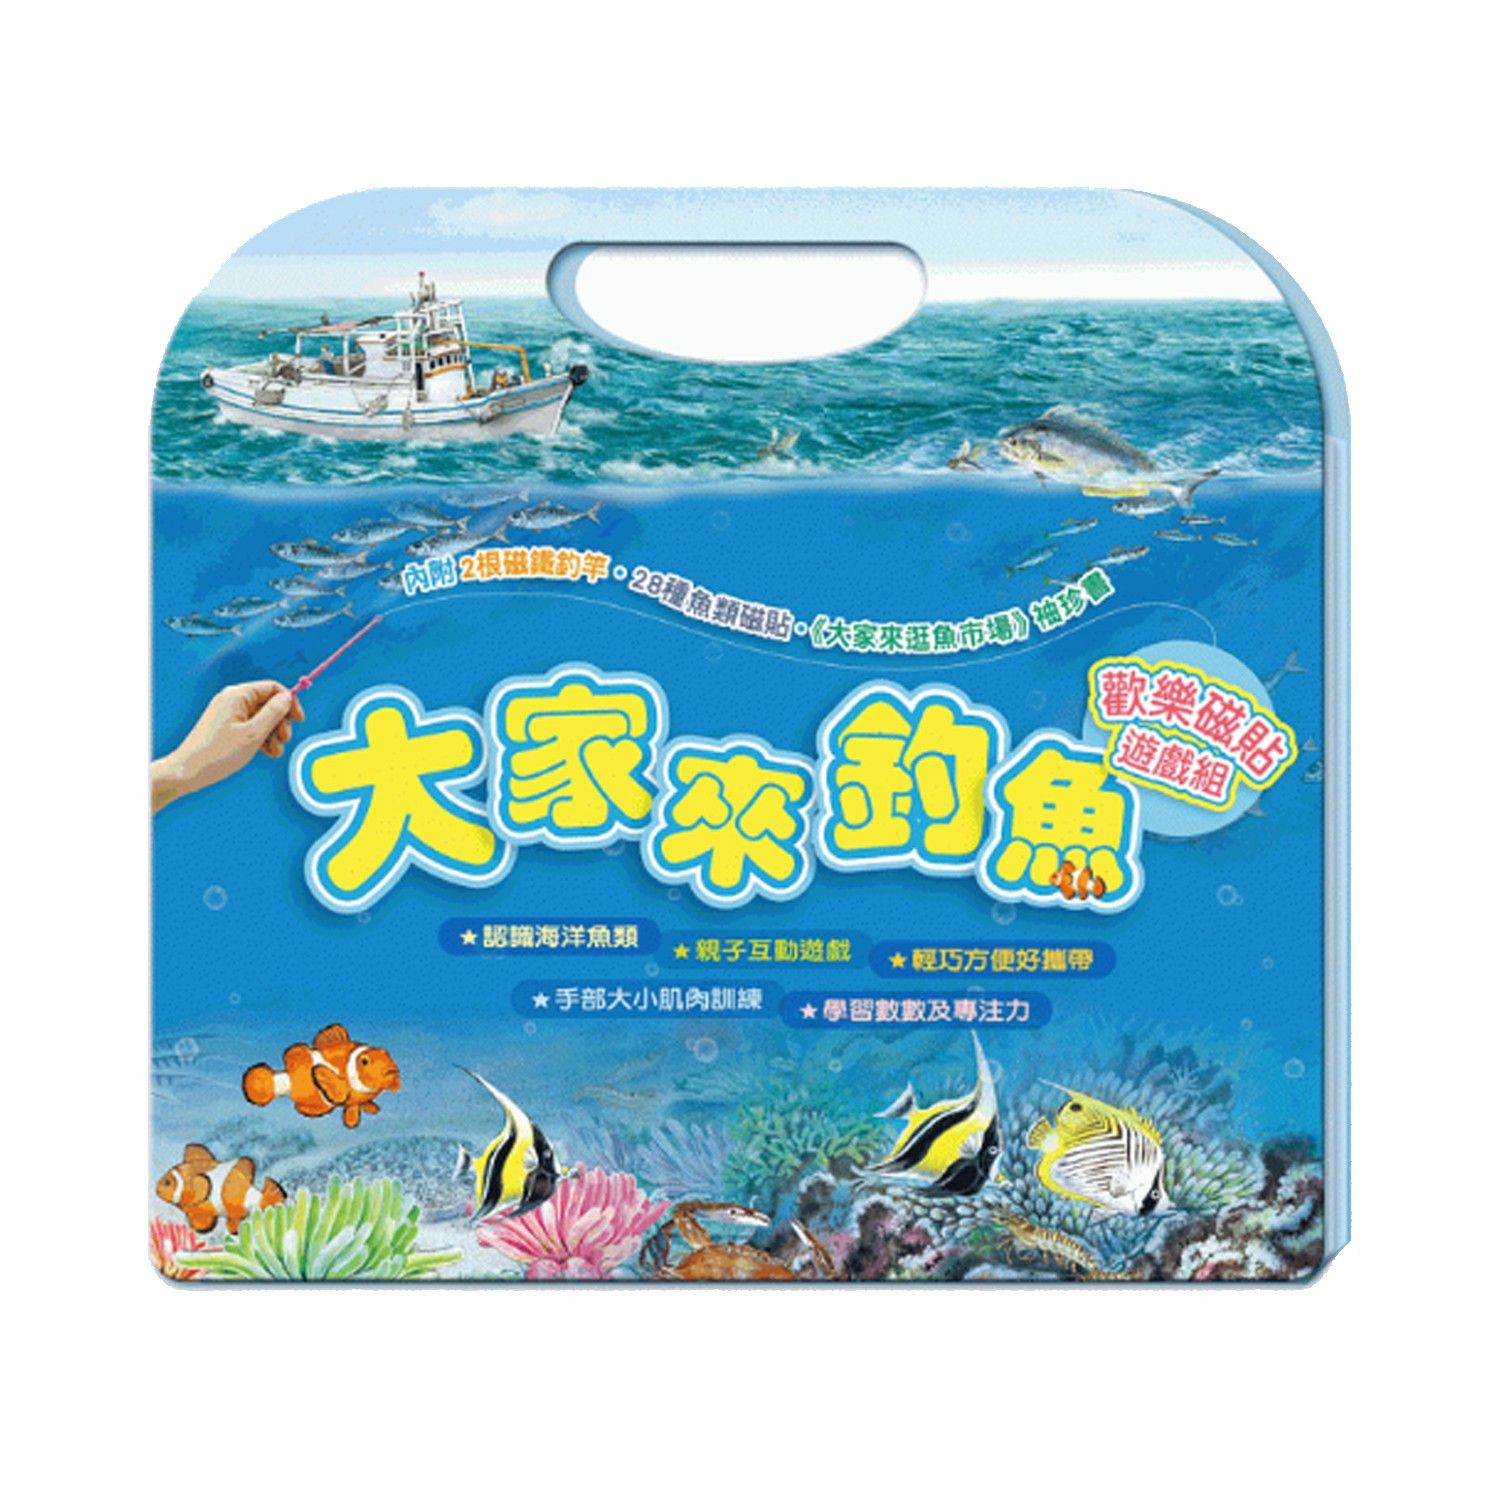 收錄精彩寫實描繪的28種臺灣常見的海洋魚類與生物。每個生物磁貼上都附有名稱，讓孩子邊玩邊學。附贈《大家來逛魚市場》袖珍小書，透過故事瞭解漁業活動知識。。多種玩法，豐富遊戲的多樣性。。輕巧的磁性手提包設